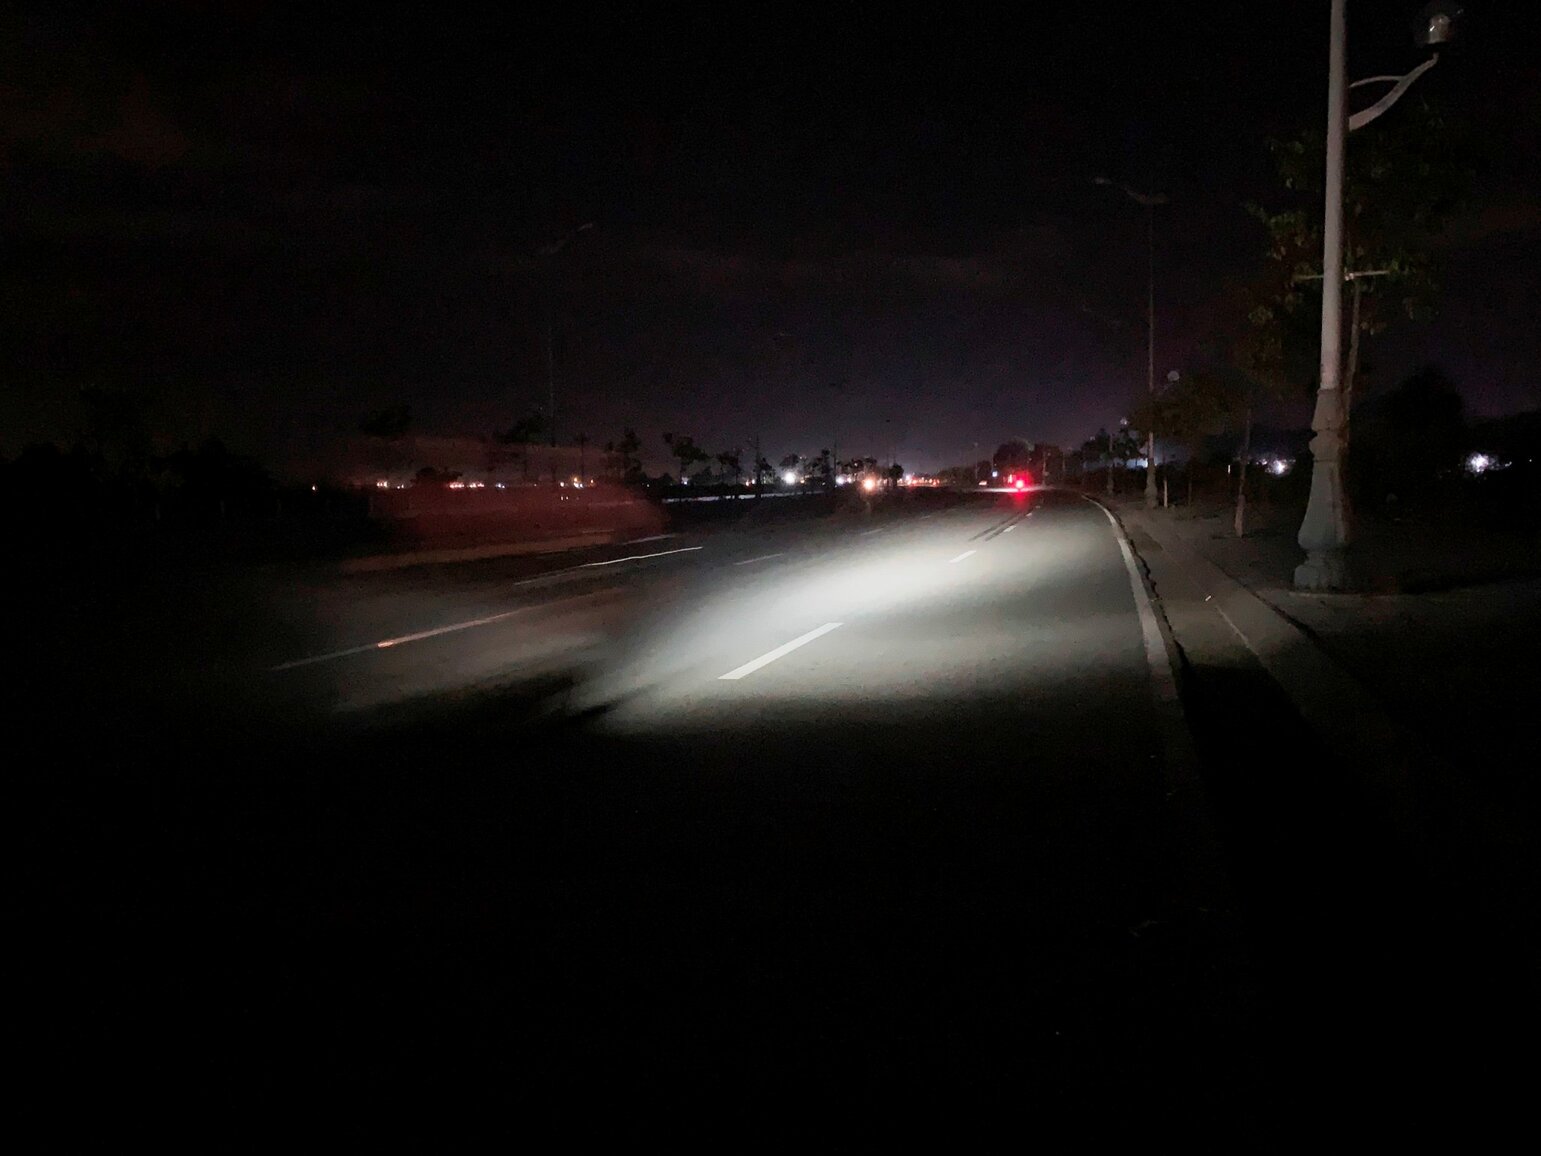 Hệ thống đèn điện trên đường Trường Sa không còn hoạt động nên thường xuyên xảy ra tai nạn giao thông vào ban đêm, mất mỹ quan đô thị, “làm xấu bộ mặt” TP Quảng Ngãi. Ảnh: Ngọc Viên